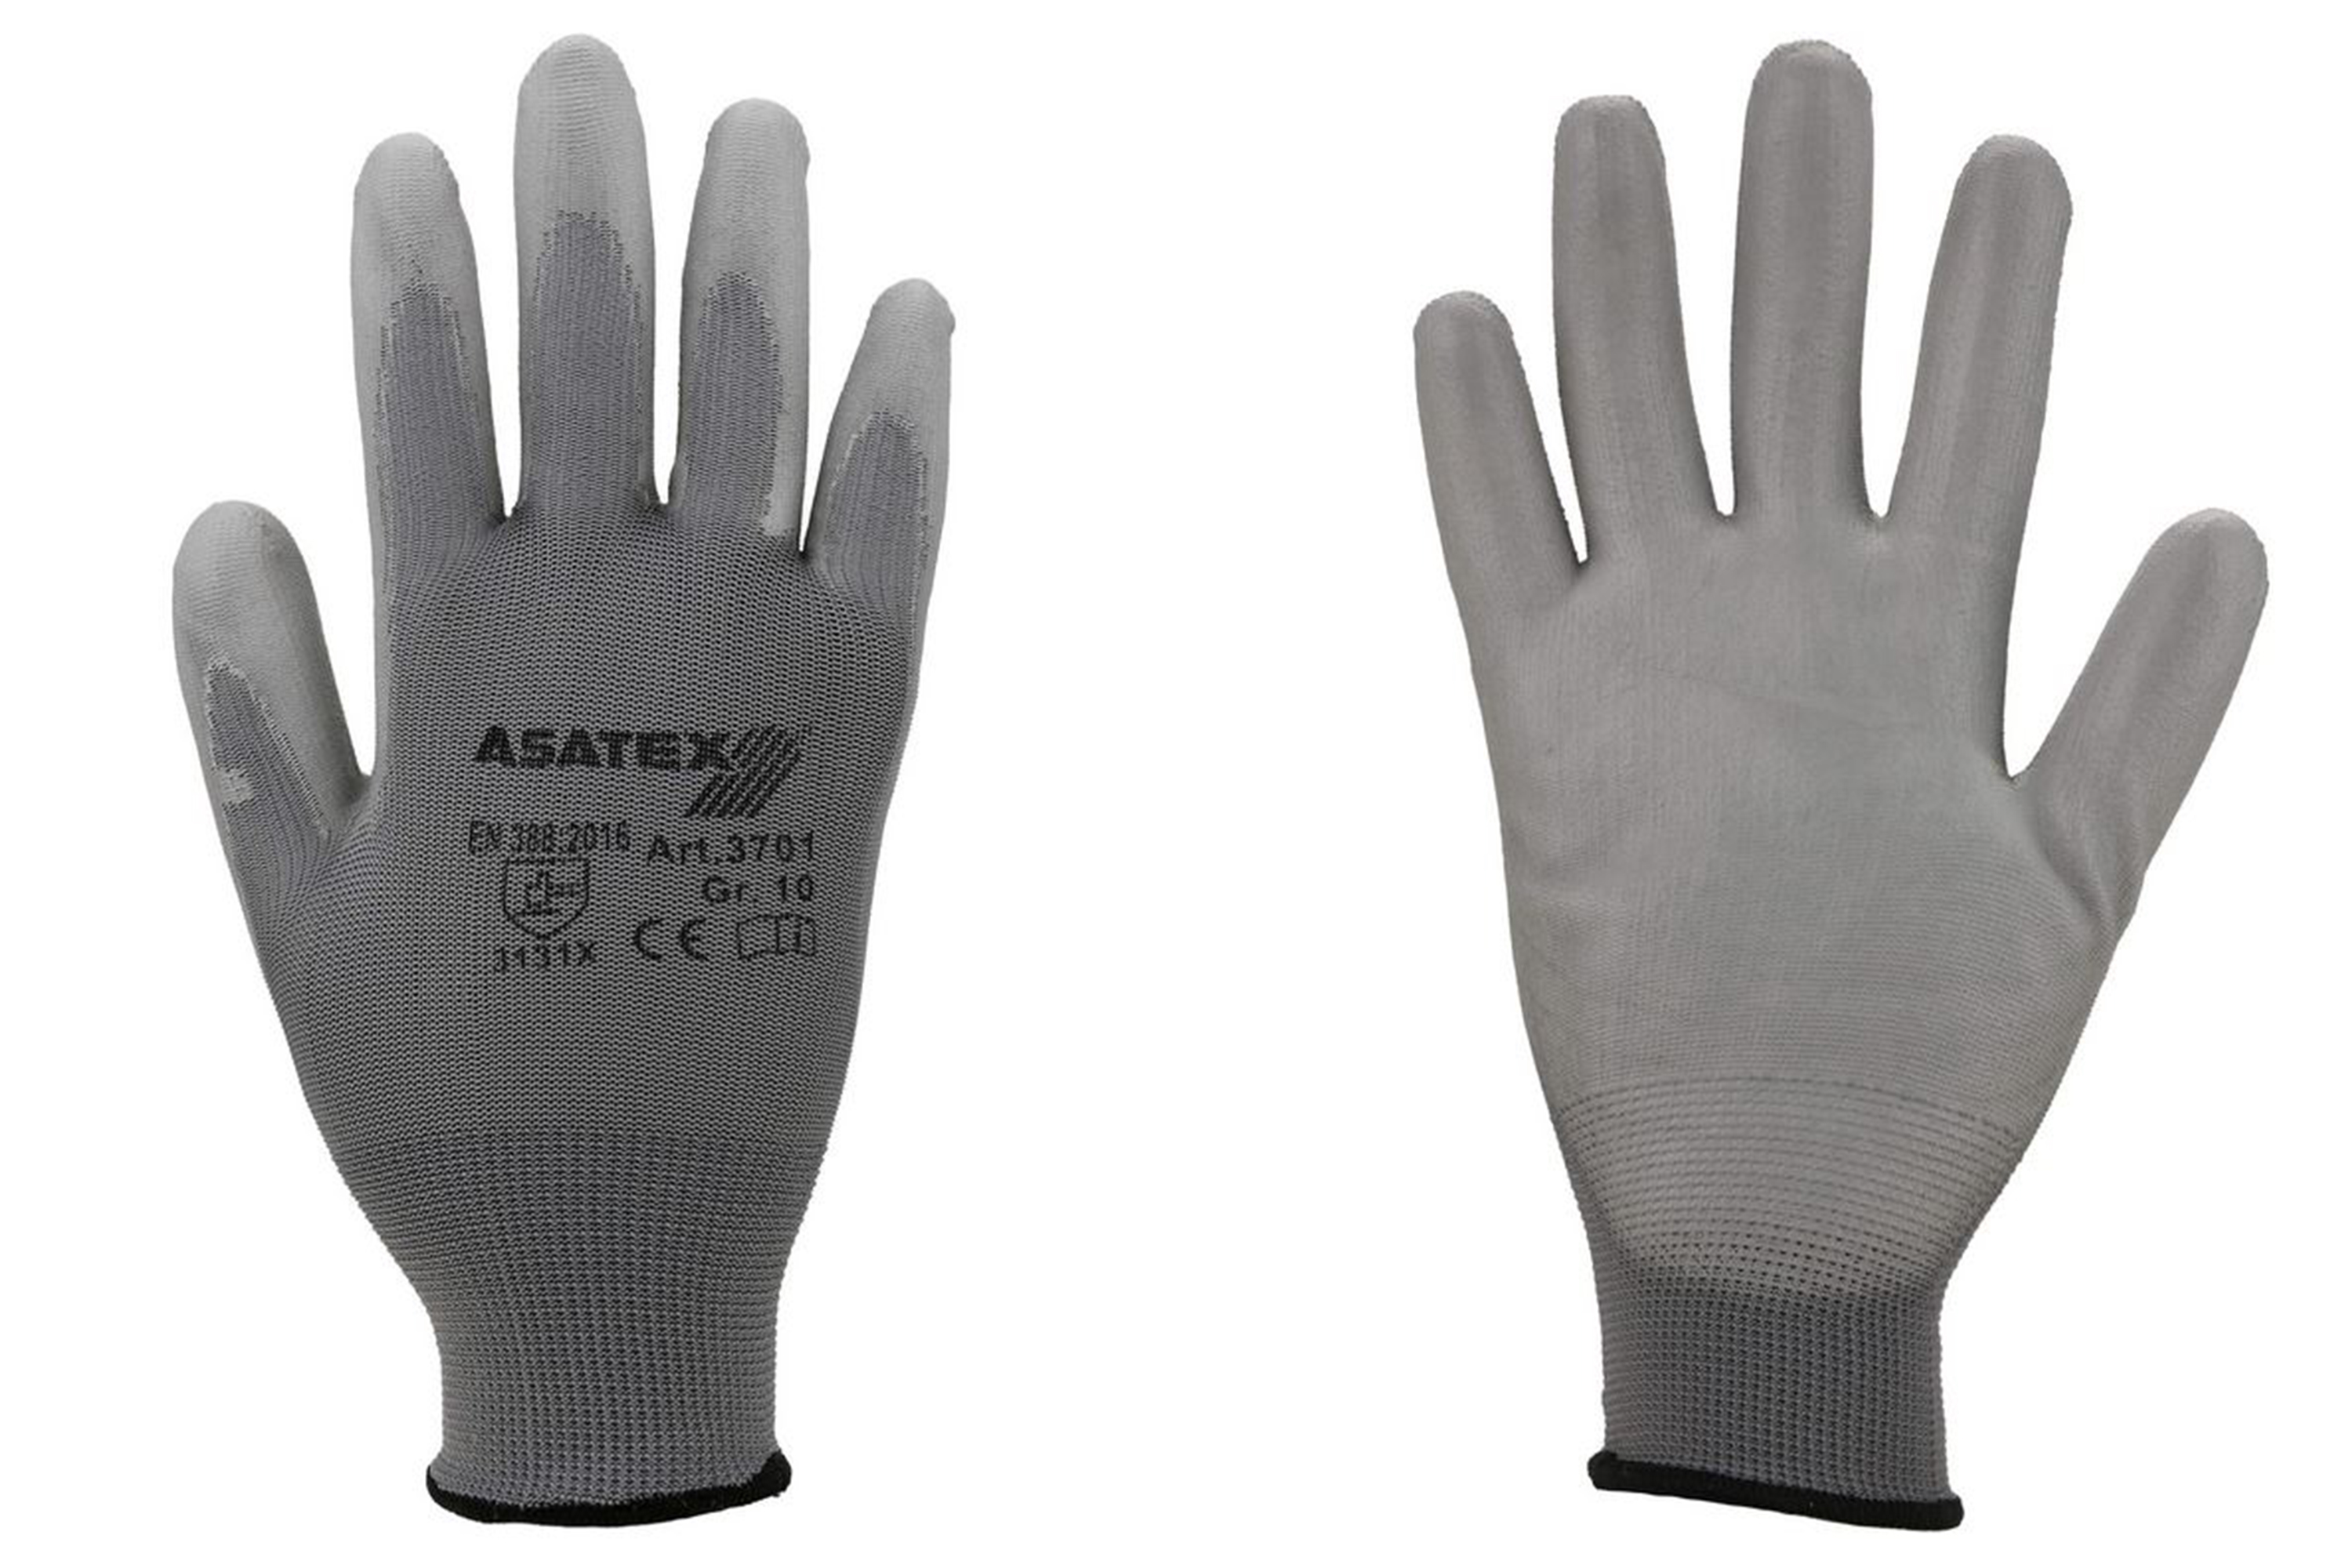 Abbildung Asatex PU Handschuh 3701 Vorder- und Rückseite.